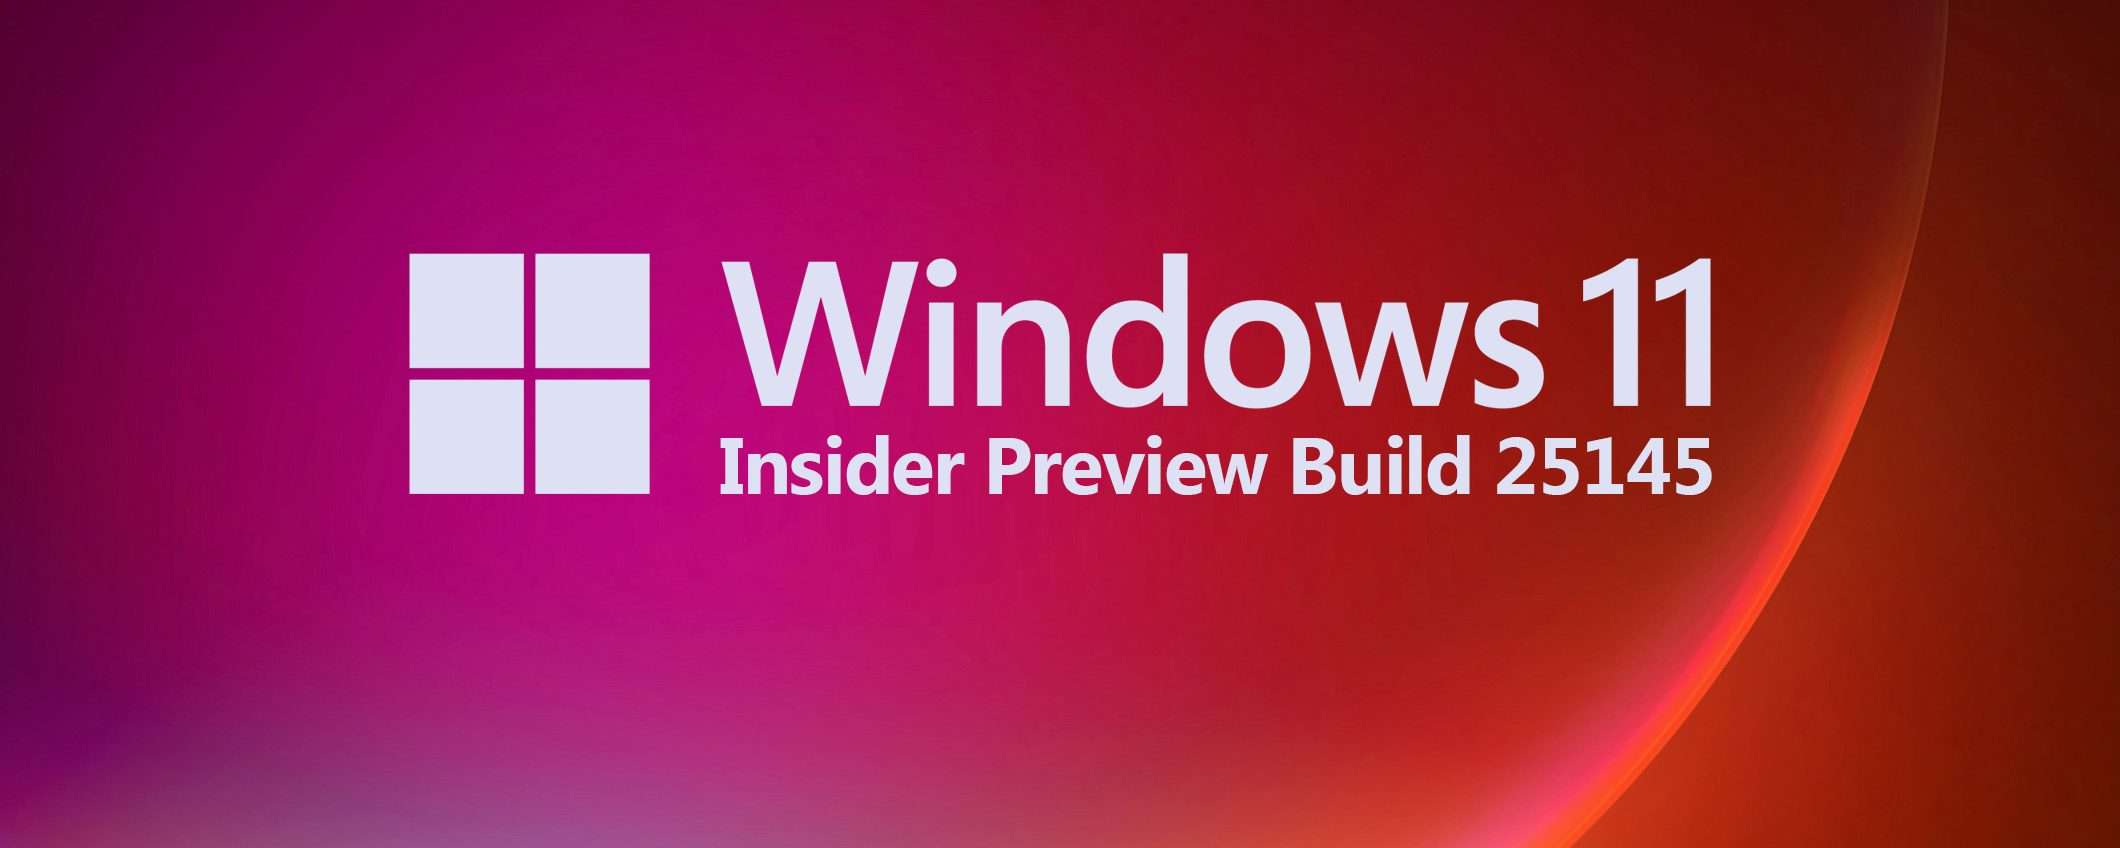 Windows 11: la Preview Build 25145 agli Insider